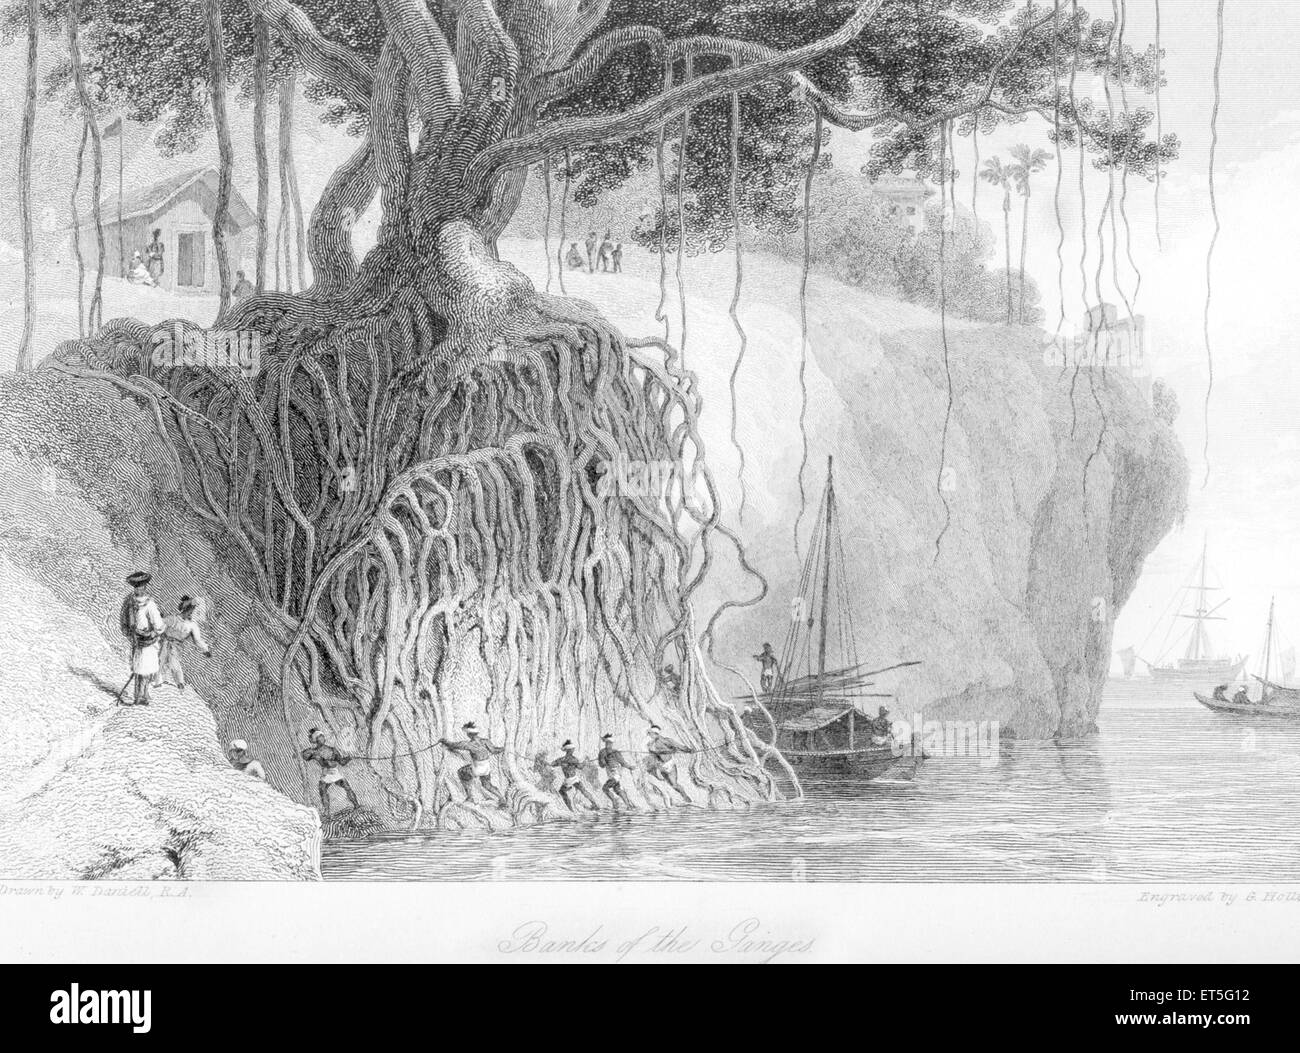 Banyan Tree Roots, Ganga River Ganges, Uttar Pradesh, Inde, Asie, Gravure en acier de style asiatique, indien, ancien datant du XIXe siècle Banque D'Images